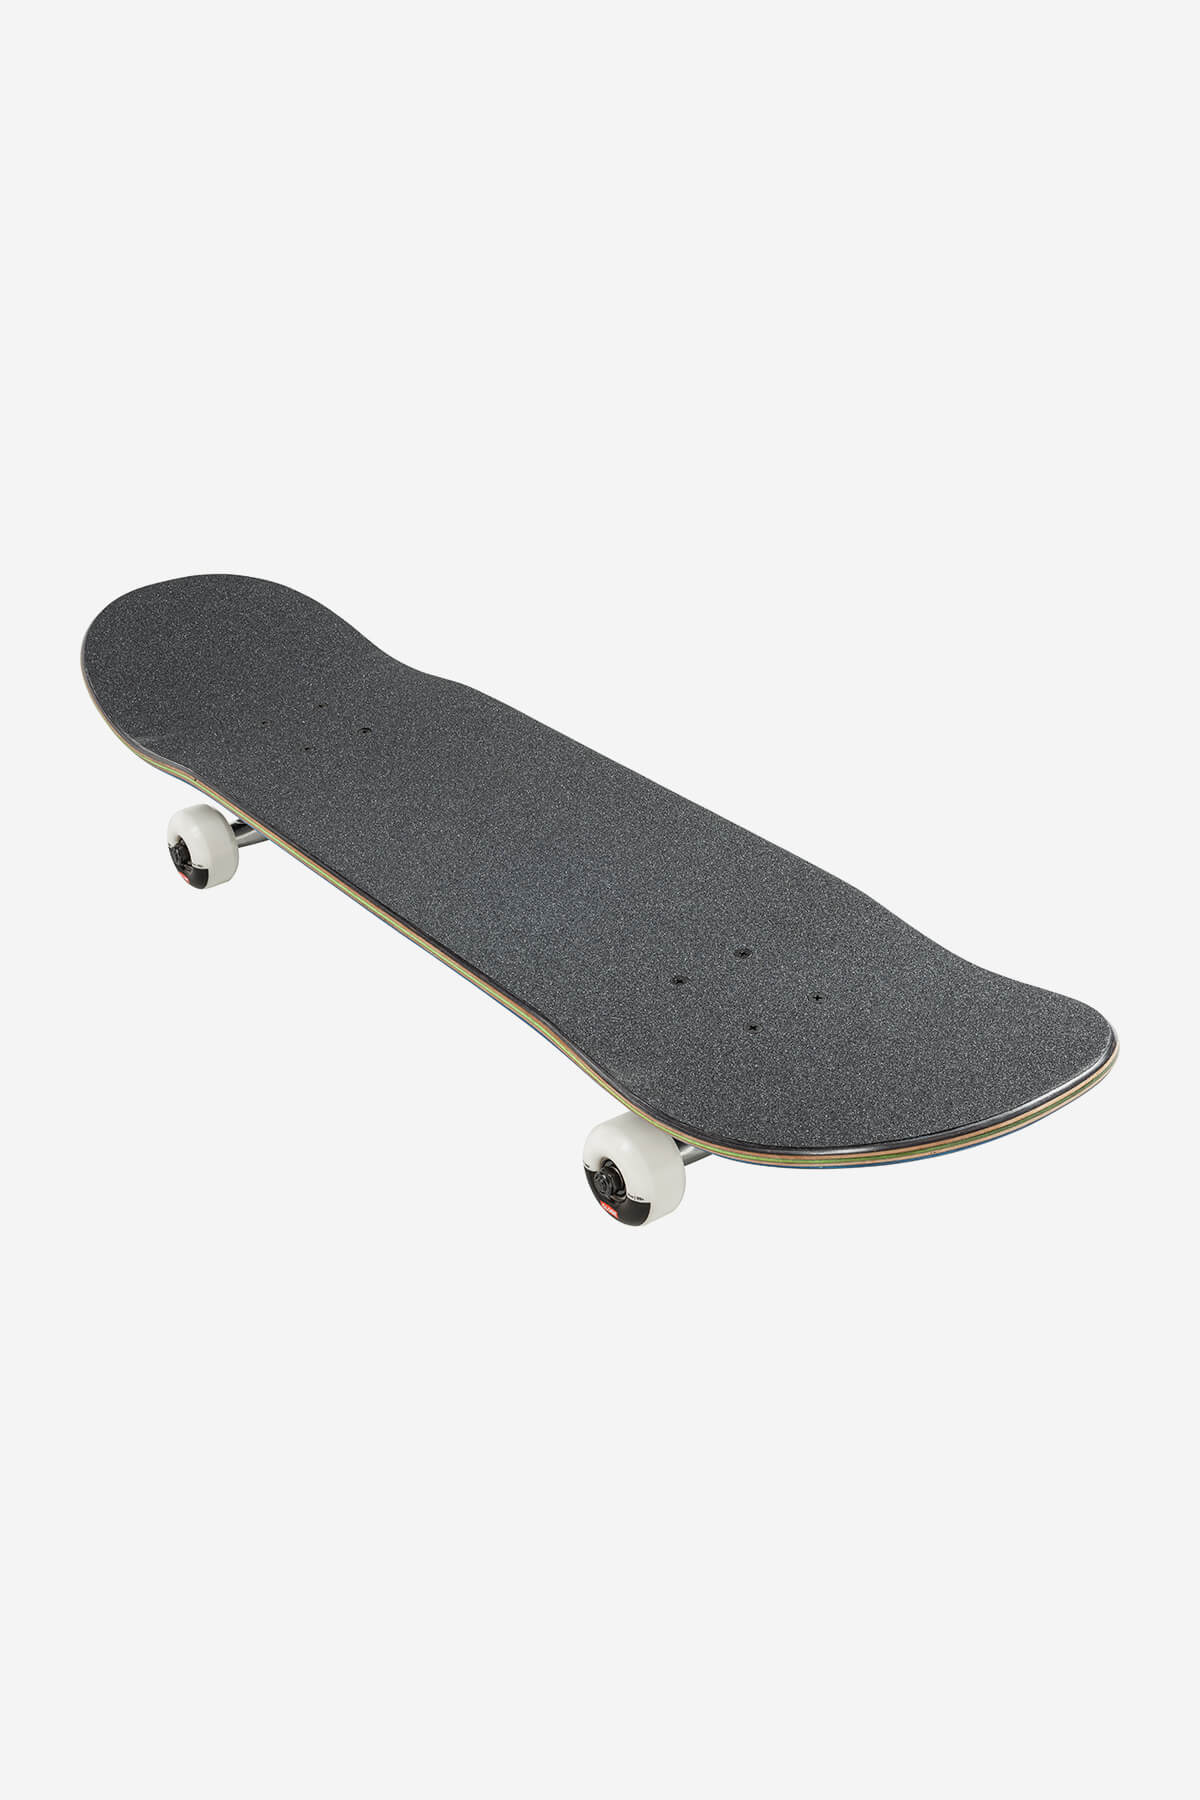 Skateboard complet Globe G1 Natives 8.0" | Nouveaux produits | Produits les plus récents | Produits les plus vendus | surfdevils.com